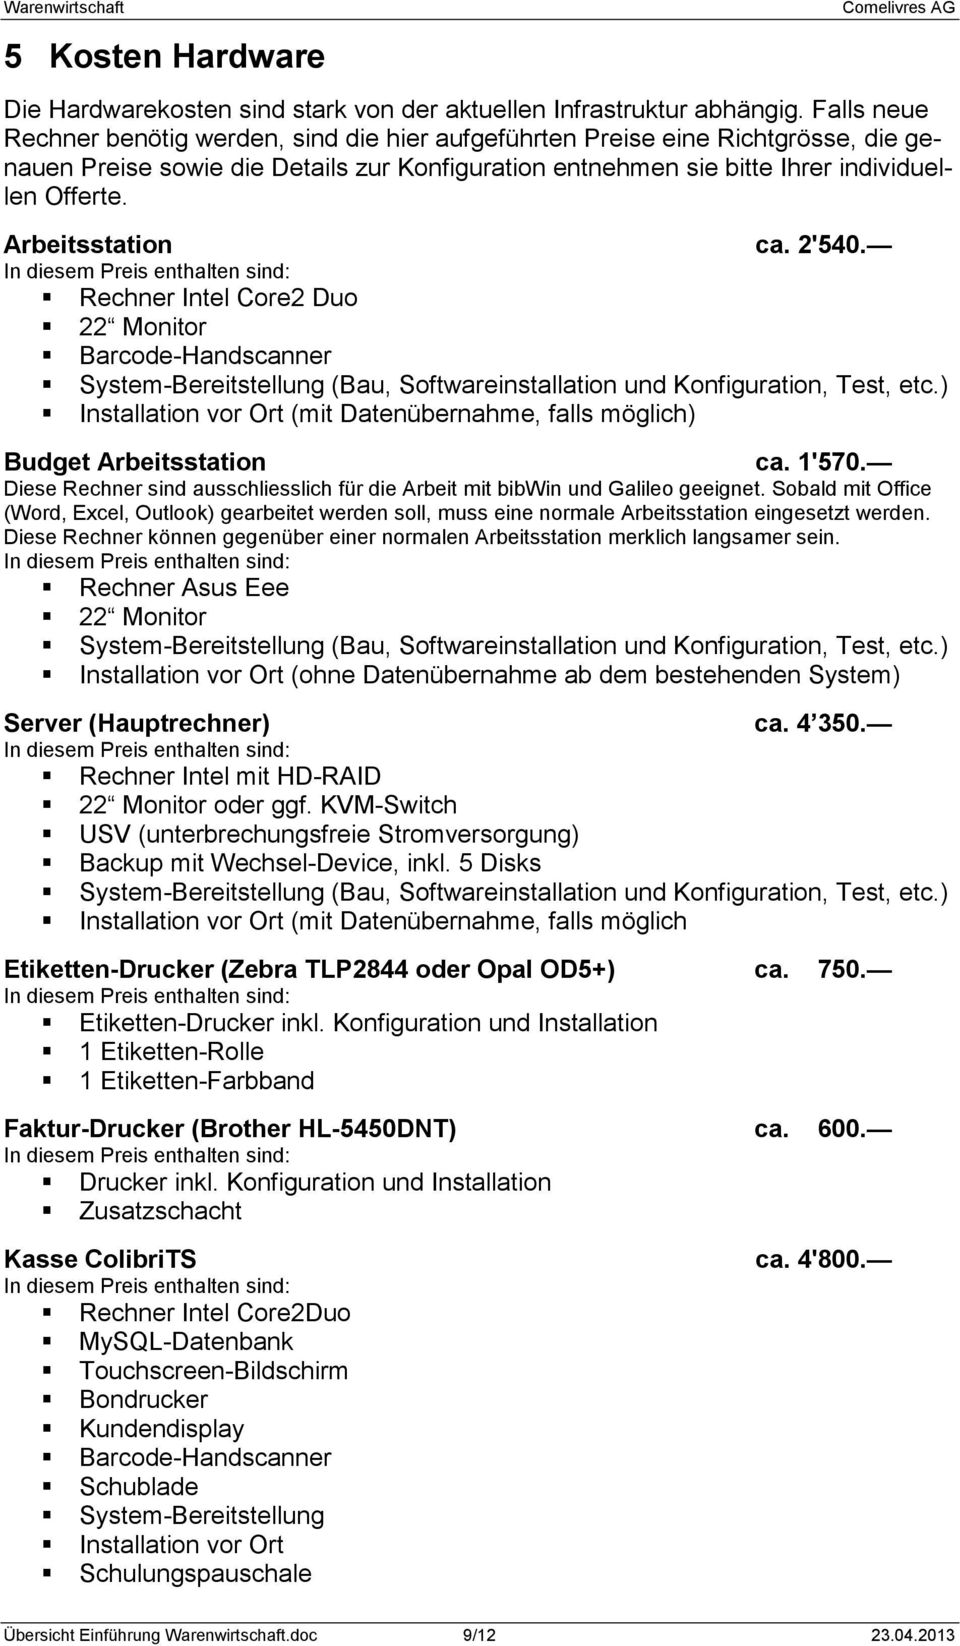 Arbeitsstation ca. 2'540. Rechner Intel Core2 Duo 22 Monitor Barcode-Handscanner System-Bereitstellung (Bau, Softwareinstallation und Konfiguration, Test, etc.